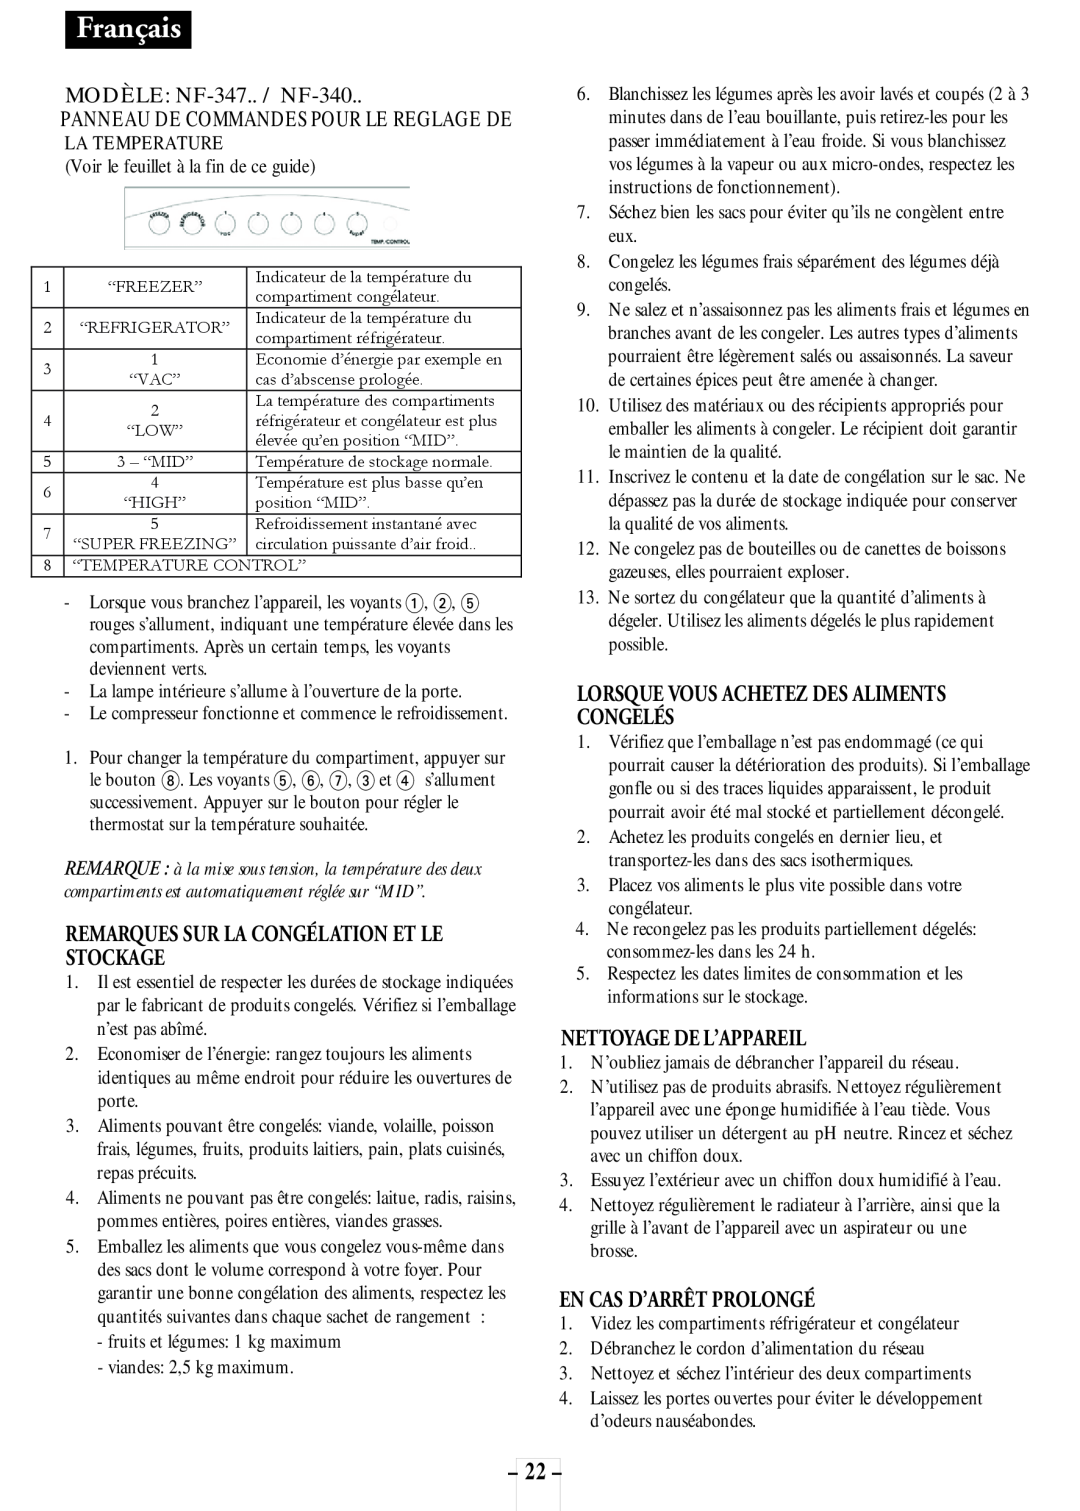 Opteka NF1-370, NF1-350 manual 22, Français, MODÈLE: NF-347.. / NF-340, Remarques Sur La Congélation Et Le Stockage 